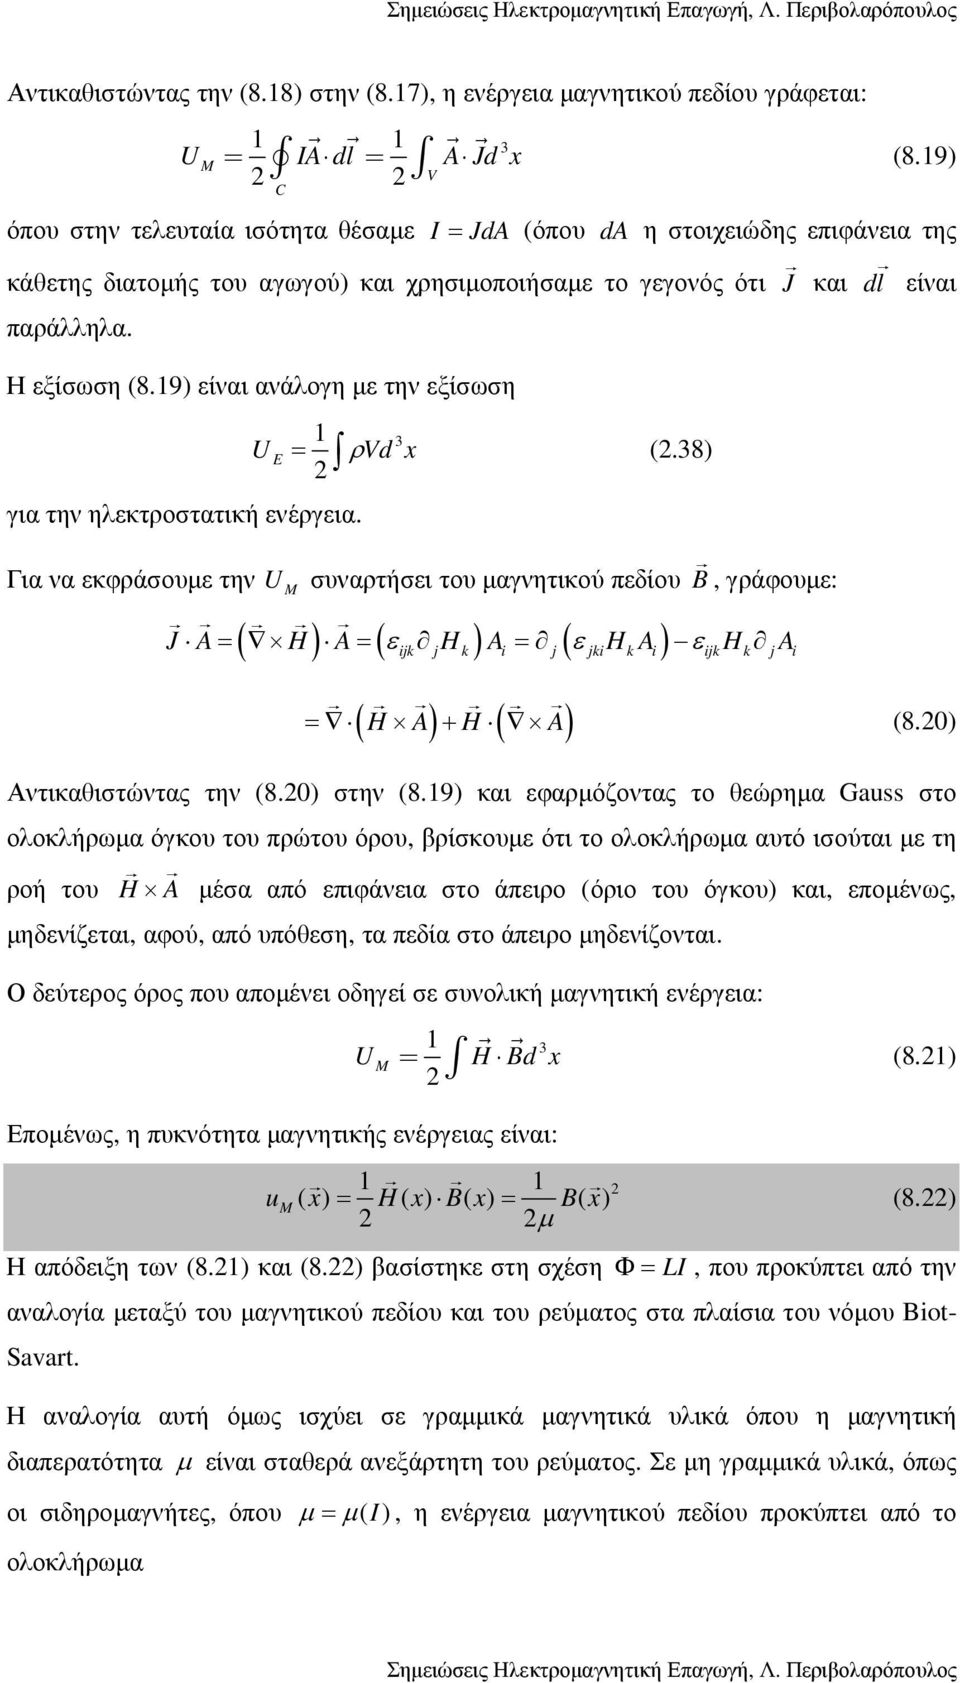 Η εξίσωση (8.19) είναι ανάλογη µε την εξίσωση U E 1 για την ηλεκτροστατική ενέργεια. 3 = ρvd x (.